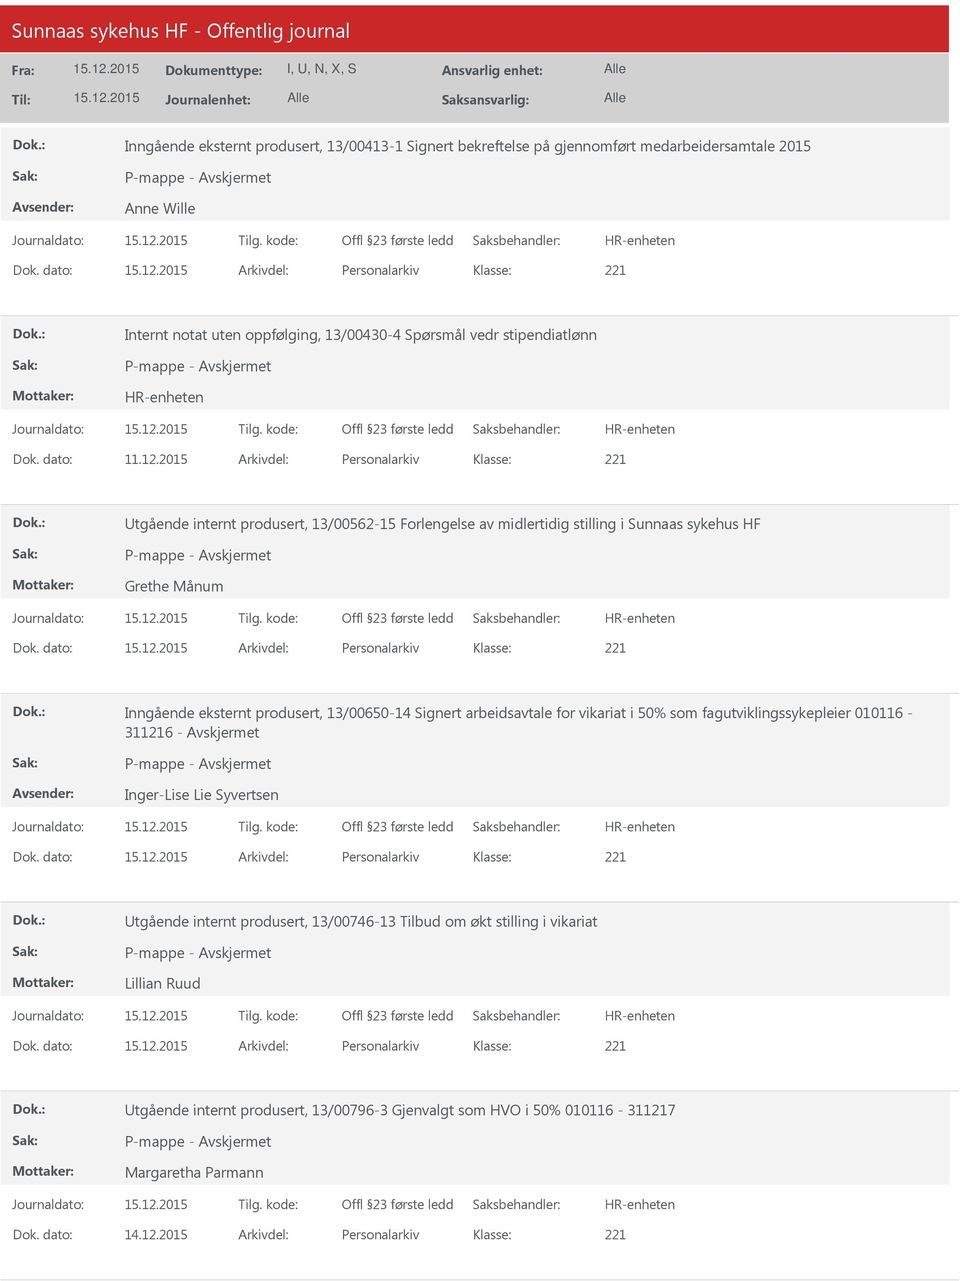 2015 Arkivdel: Personalarkiv tgående internt produsert, 13/00562-15 Forlengelse av midlertidig stilling i Sunnaas sykehus HF Grethe Månum Inngående eksternt produsert, 13/00650-14